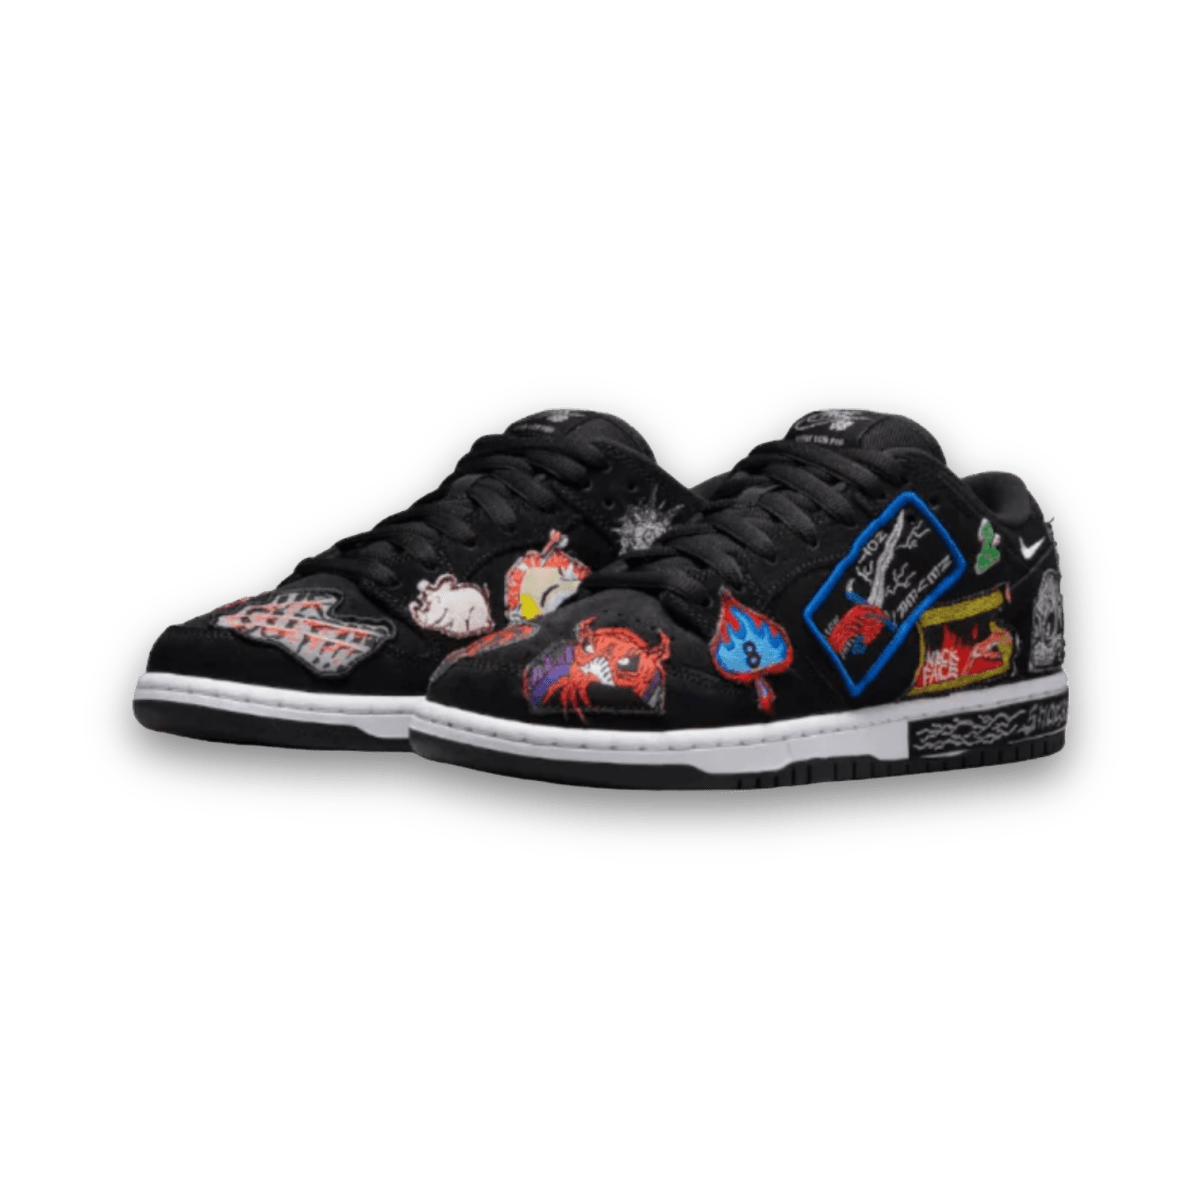 SB Dunk Low Pro QS Neckface - Low Sneaker - Jawns on Fire Sneakers & Streetwear